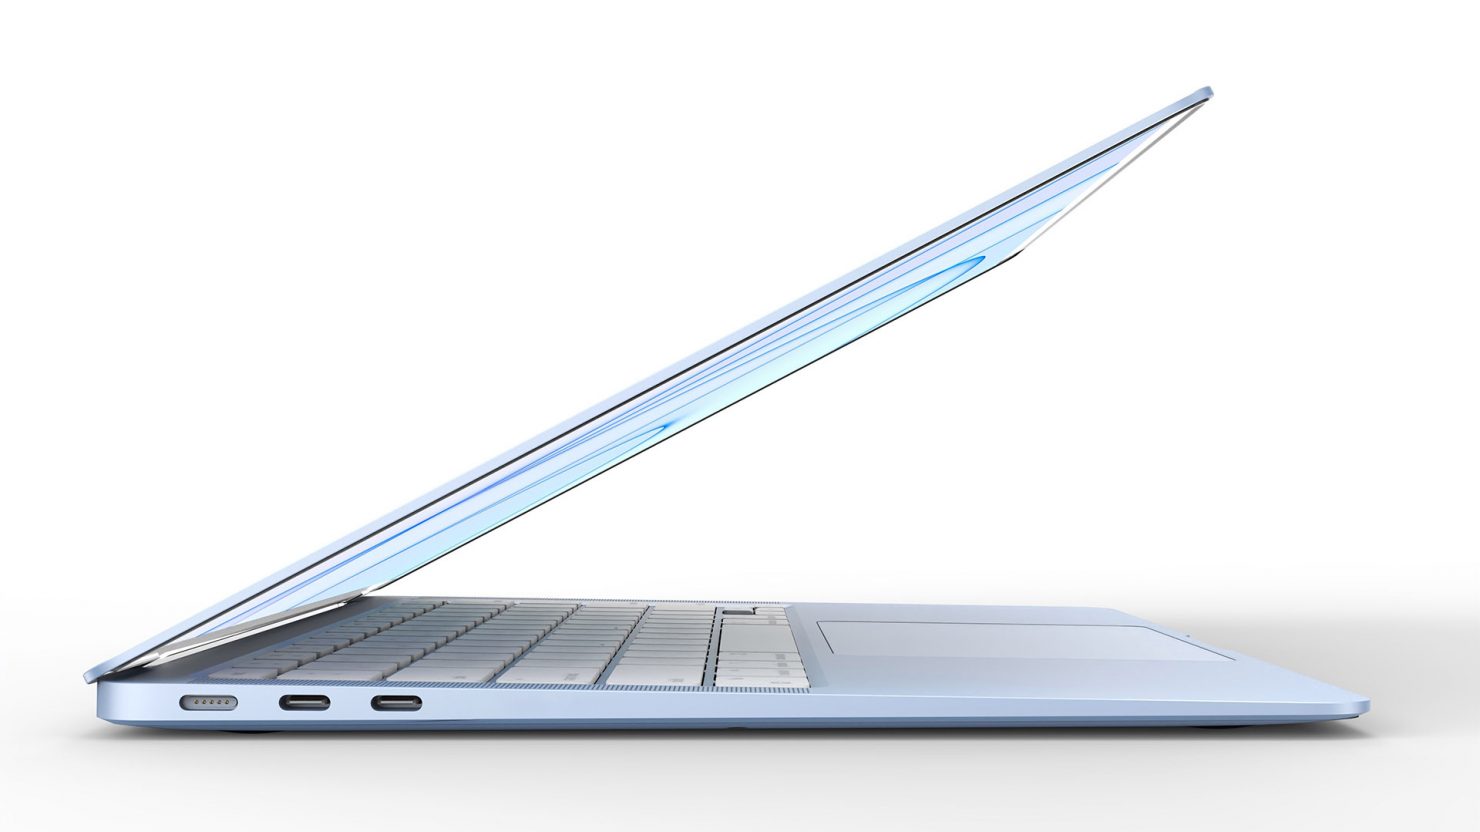 Una nueva fuga sugiere un MacBook Air totalmente nuevo y de gama alta que se lanzará más adelante este año